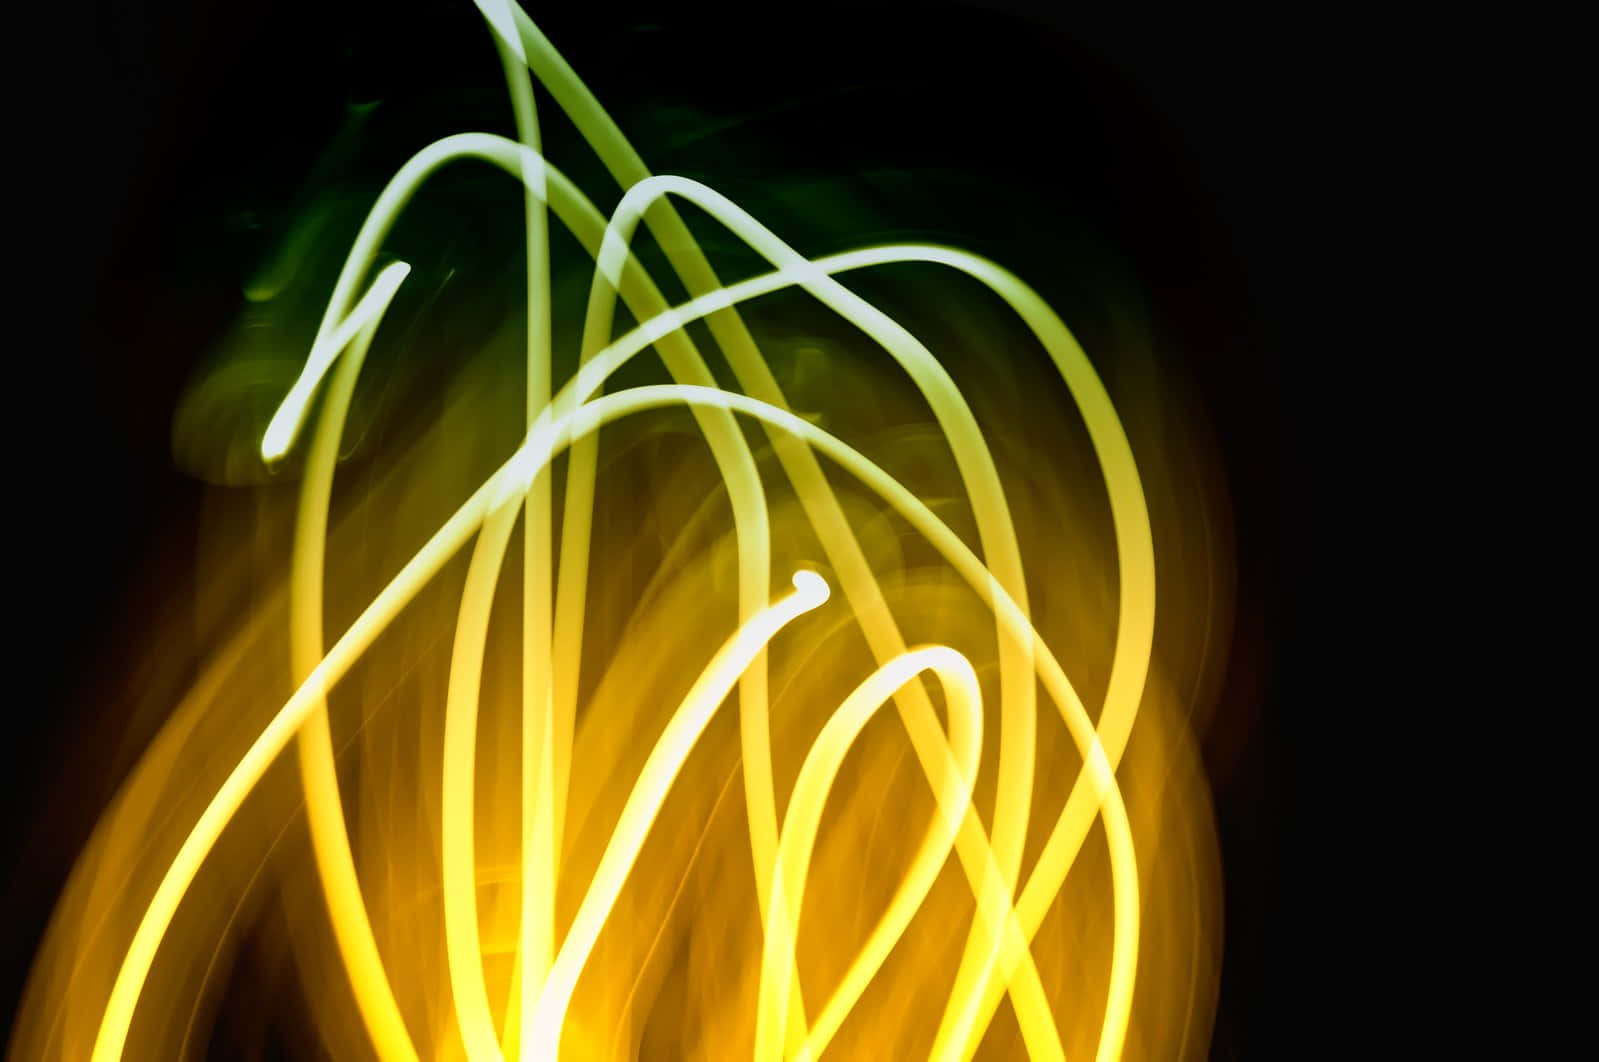 Ljusgulljuseffektbild För Datorskärmen Eller Mobilbakgrund.